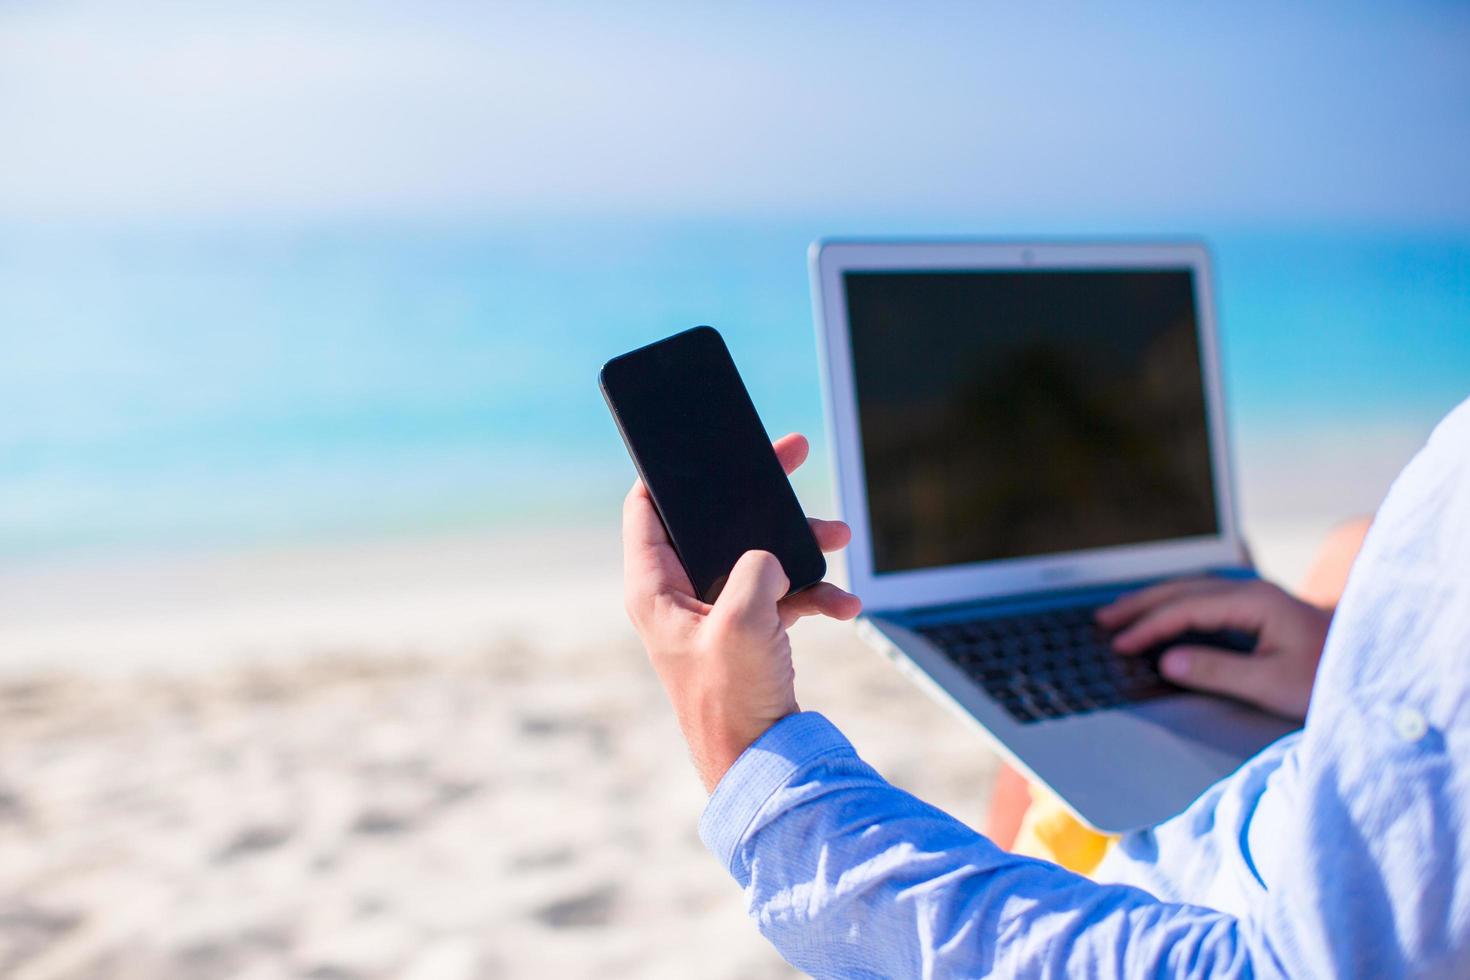 närbild av en person som använder en telefon och bärbar dator på en strand foto